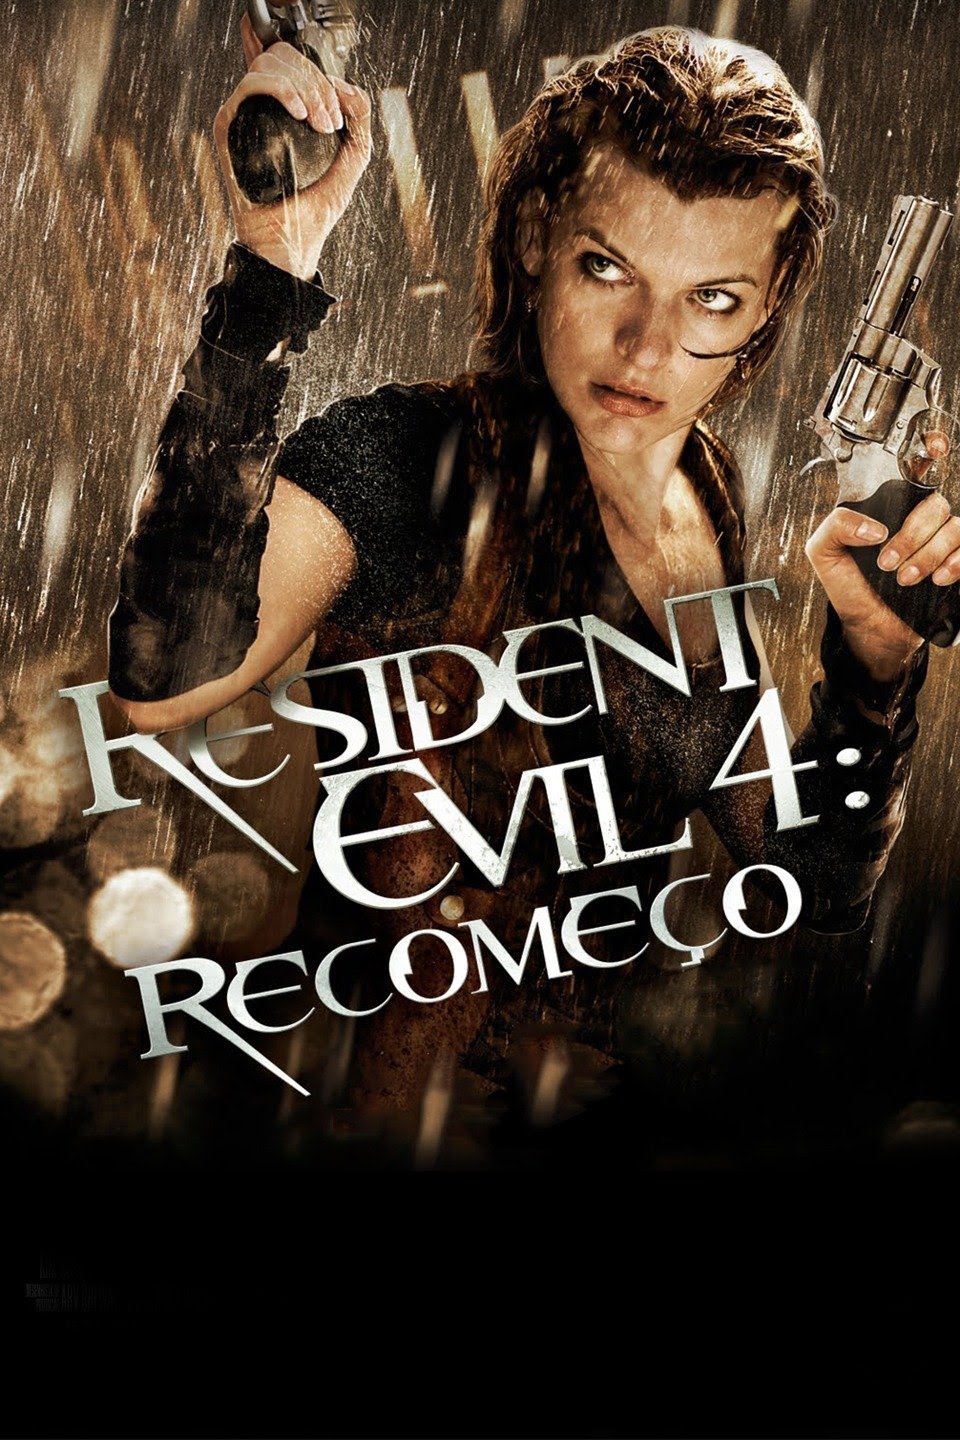 Resident Evil 2 – Wikipédia, a enciclopédia livre